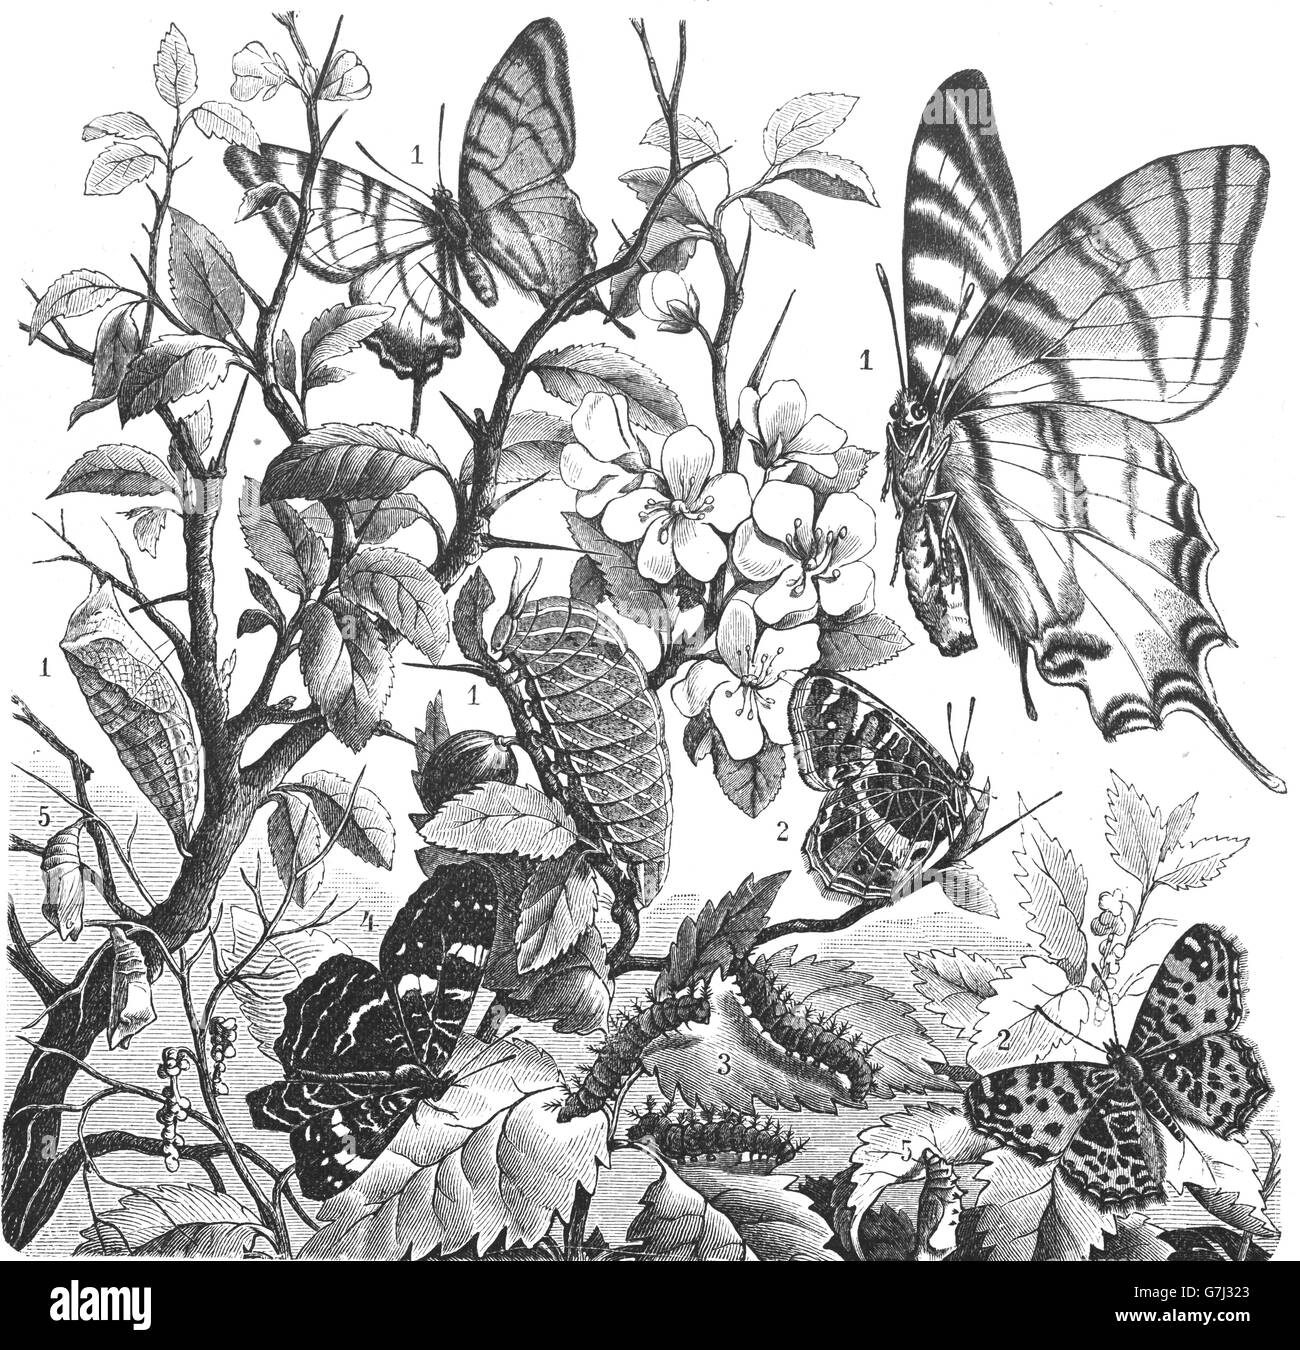 Knappen Schwalbenschwanz und Vanessa Levana Schmetterling, Illustration aus Buch datiert 1904 Stockfoto